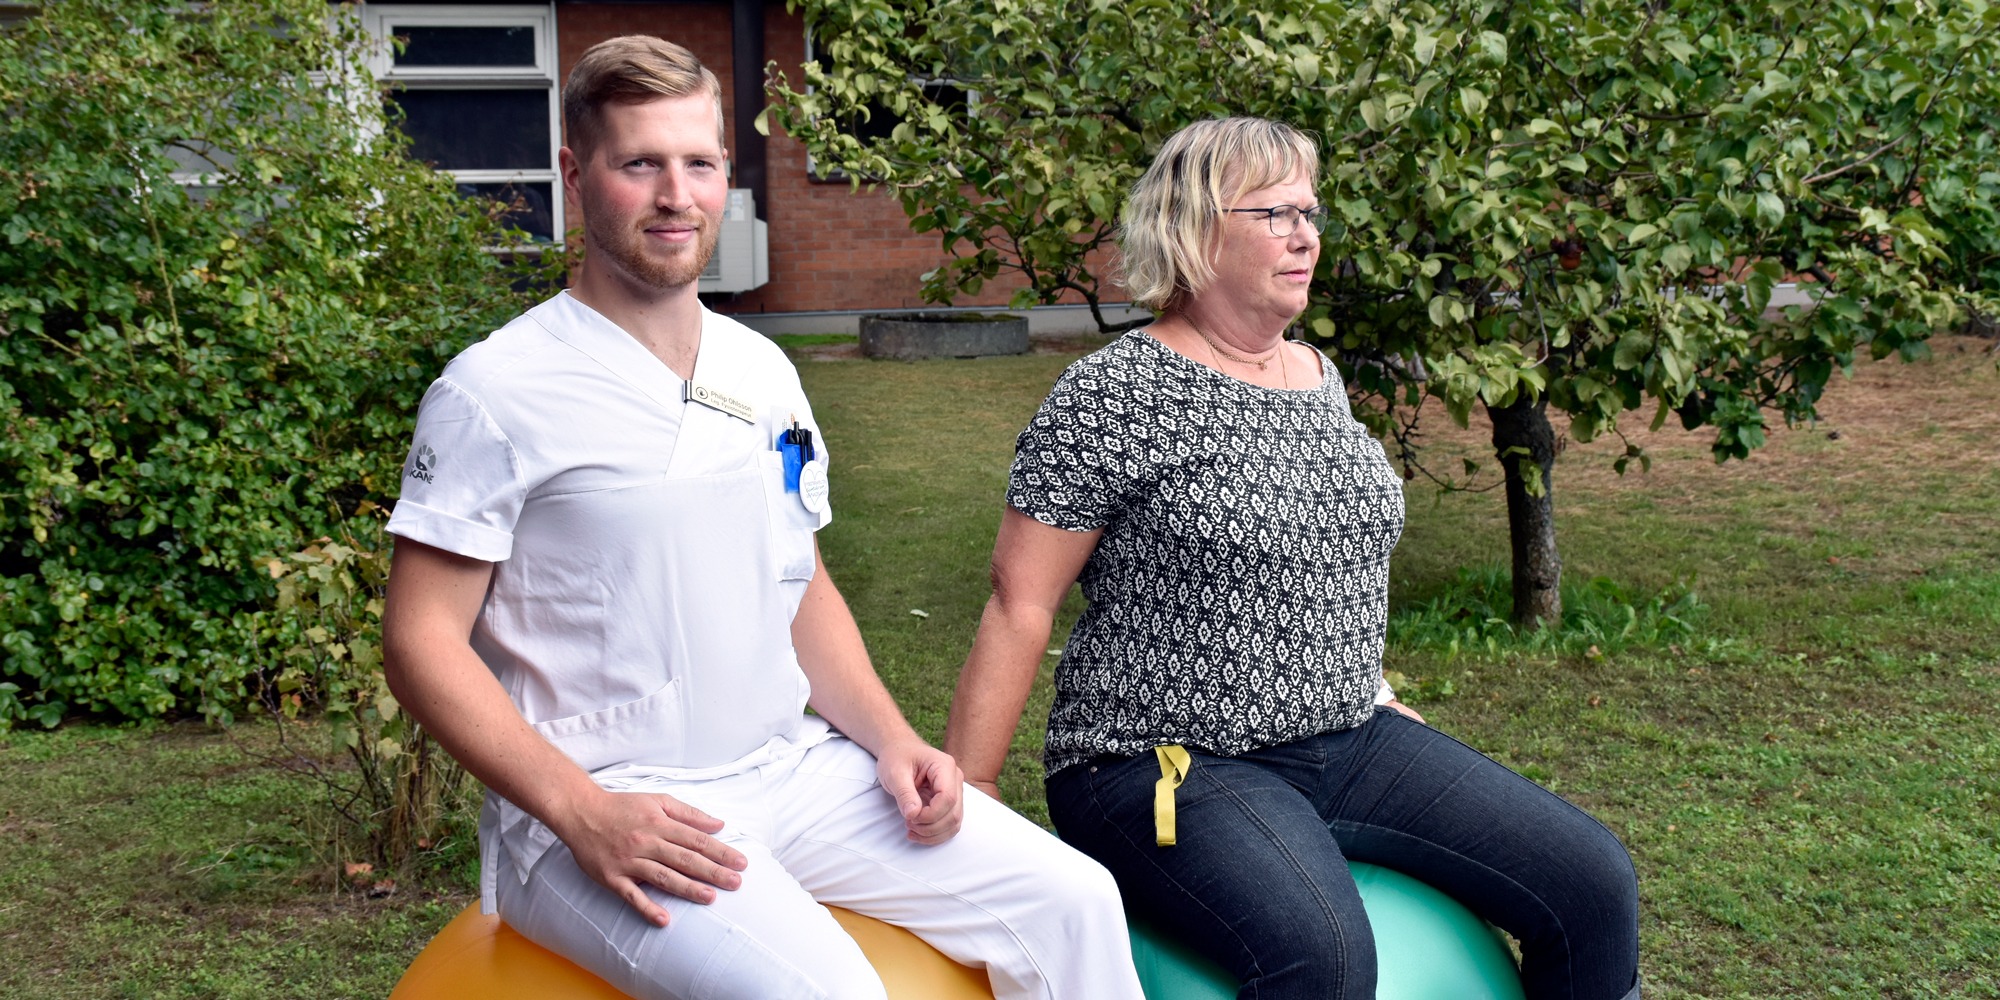 Fysioterapeut och sekreterare sitter på varsin pilatesboll i trädgård utanför vårdcentral, återhämtning i arbetet.